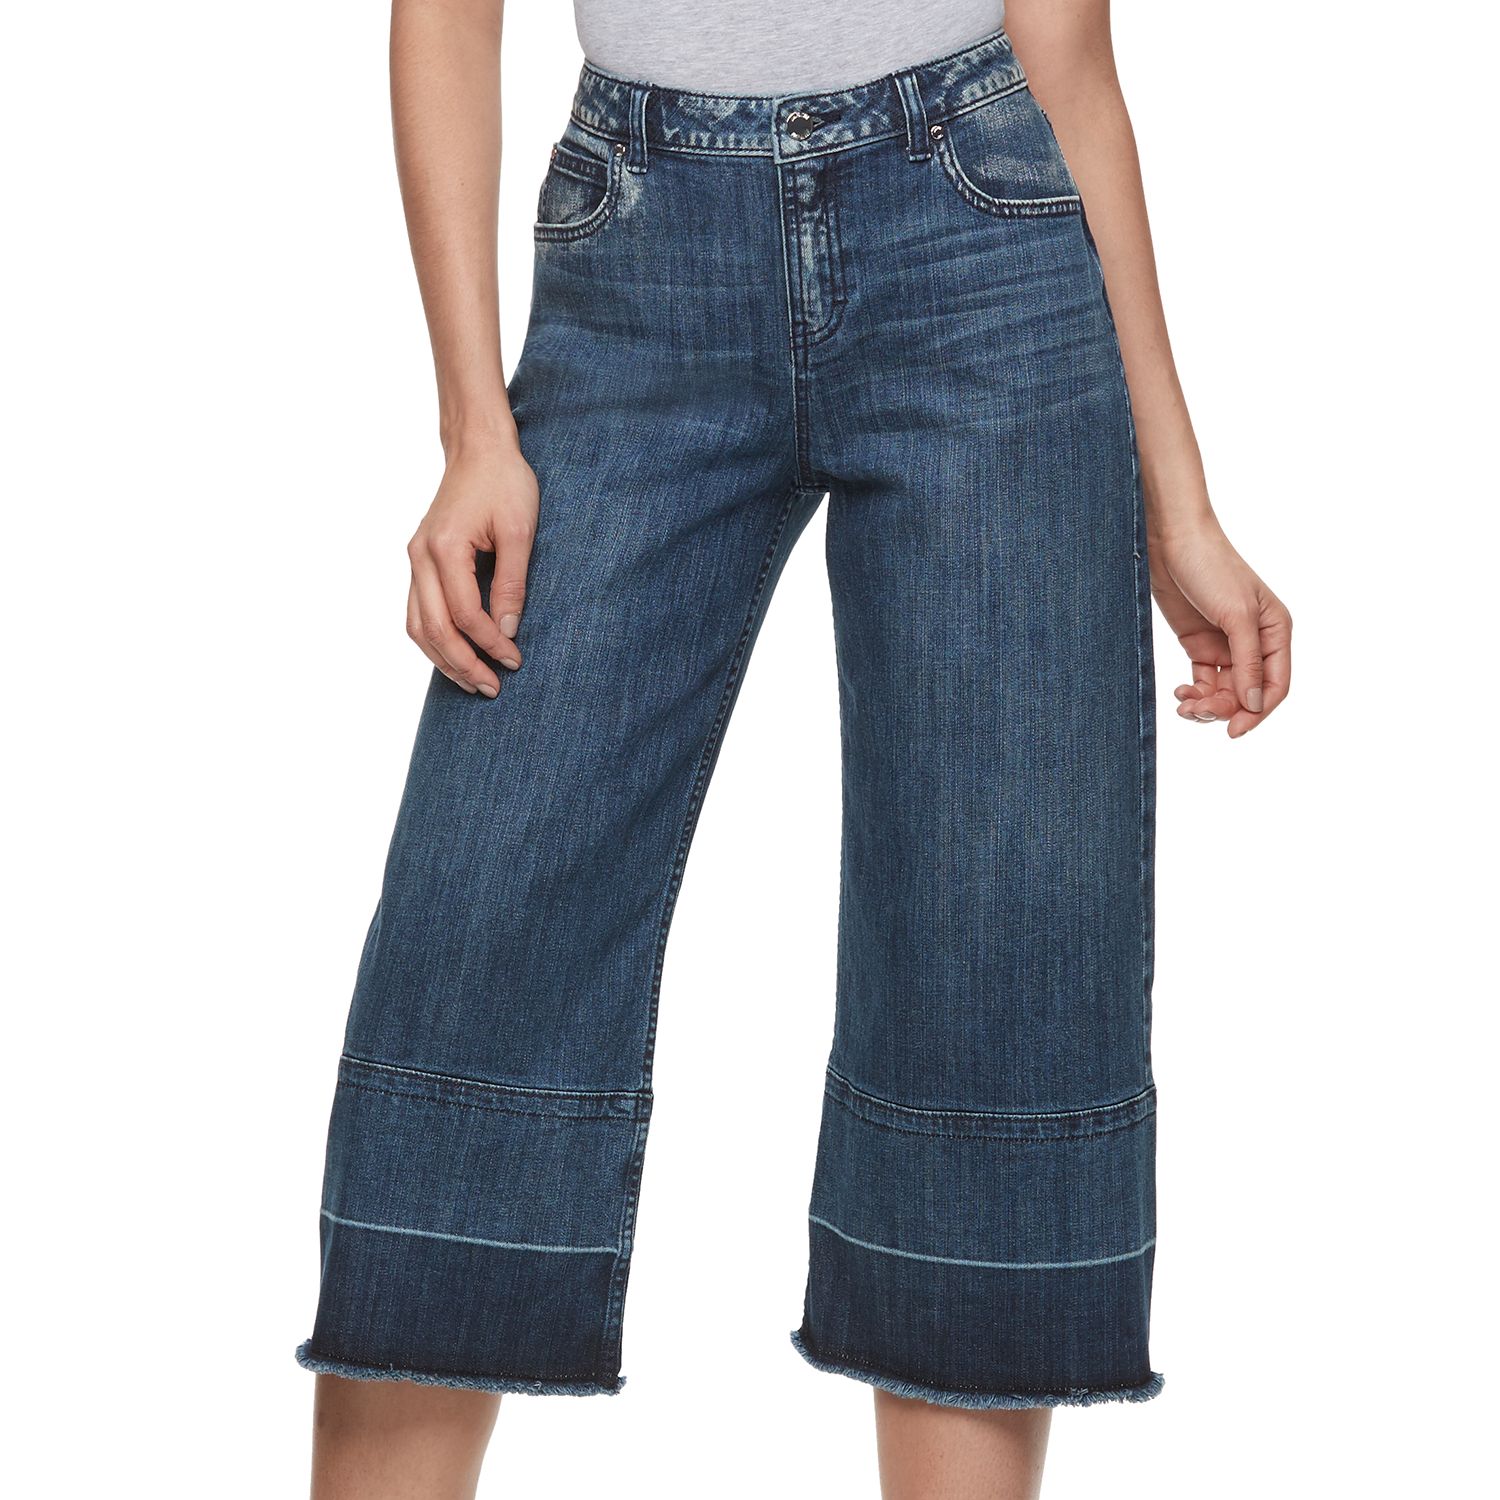 hot jeans design